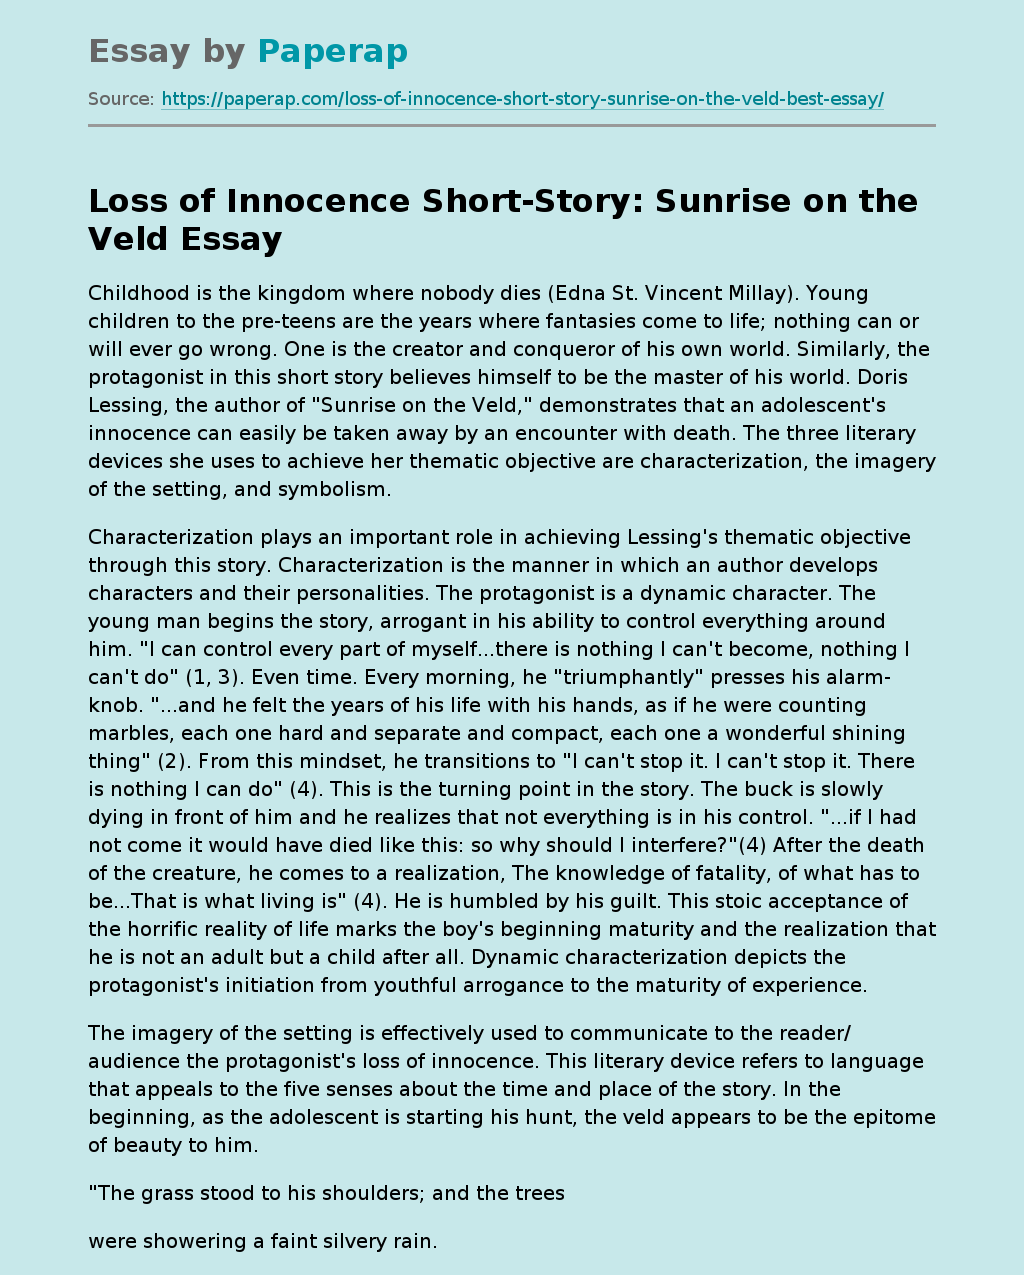 Loss of Innocence Short-Story: Sunrise on the Veld